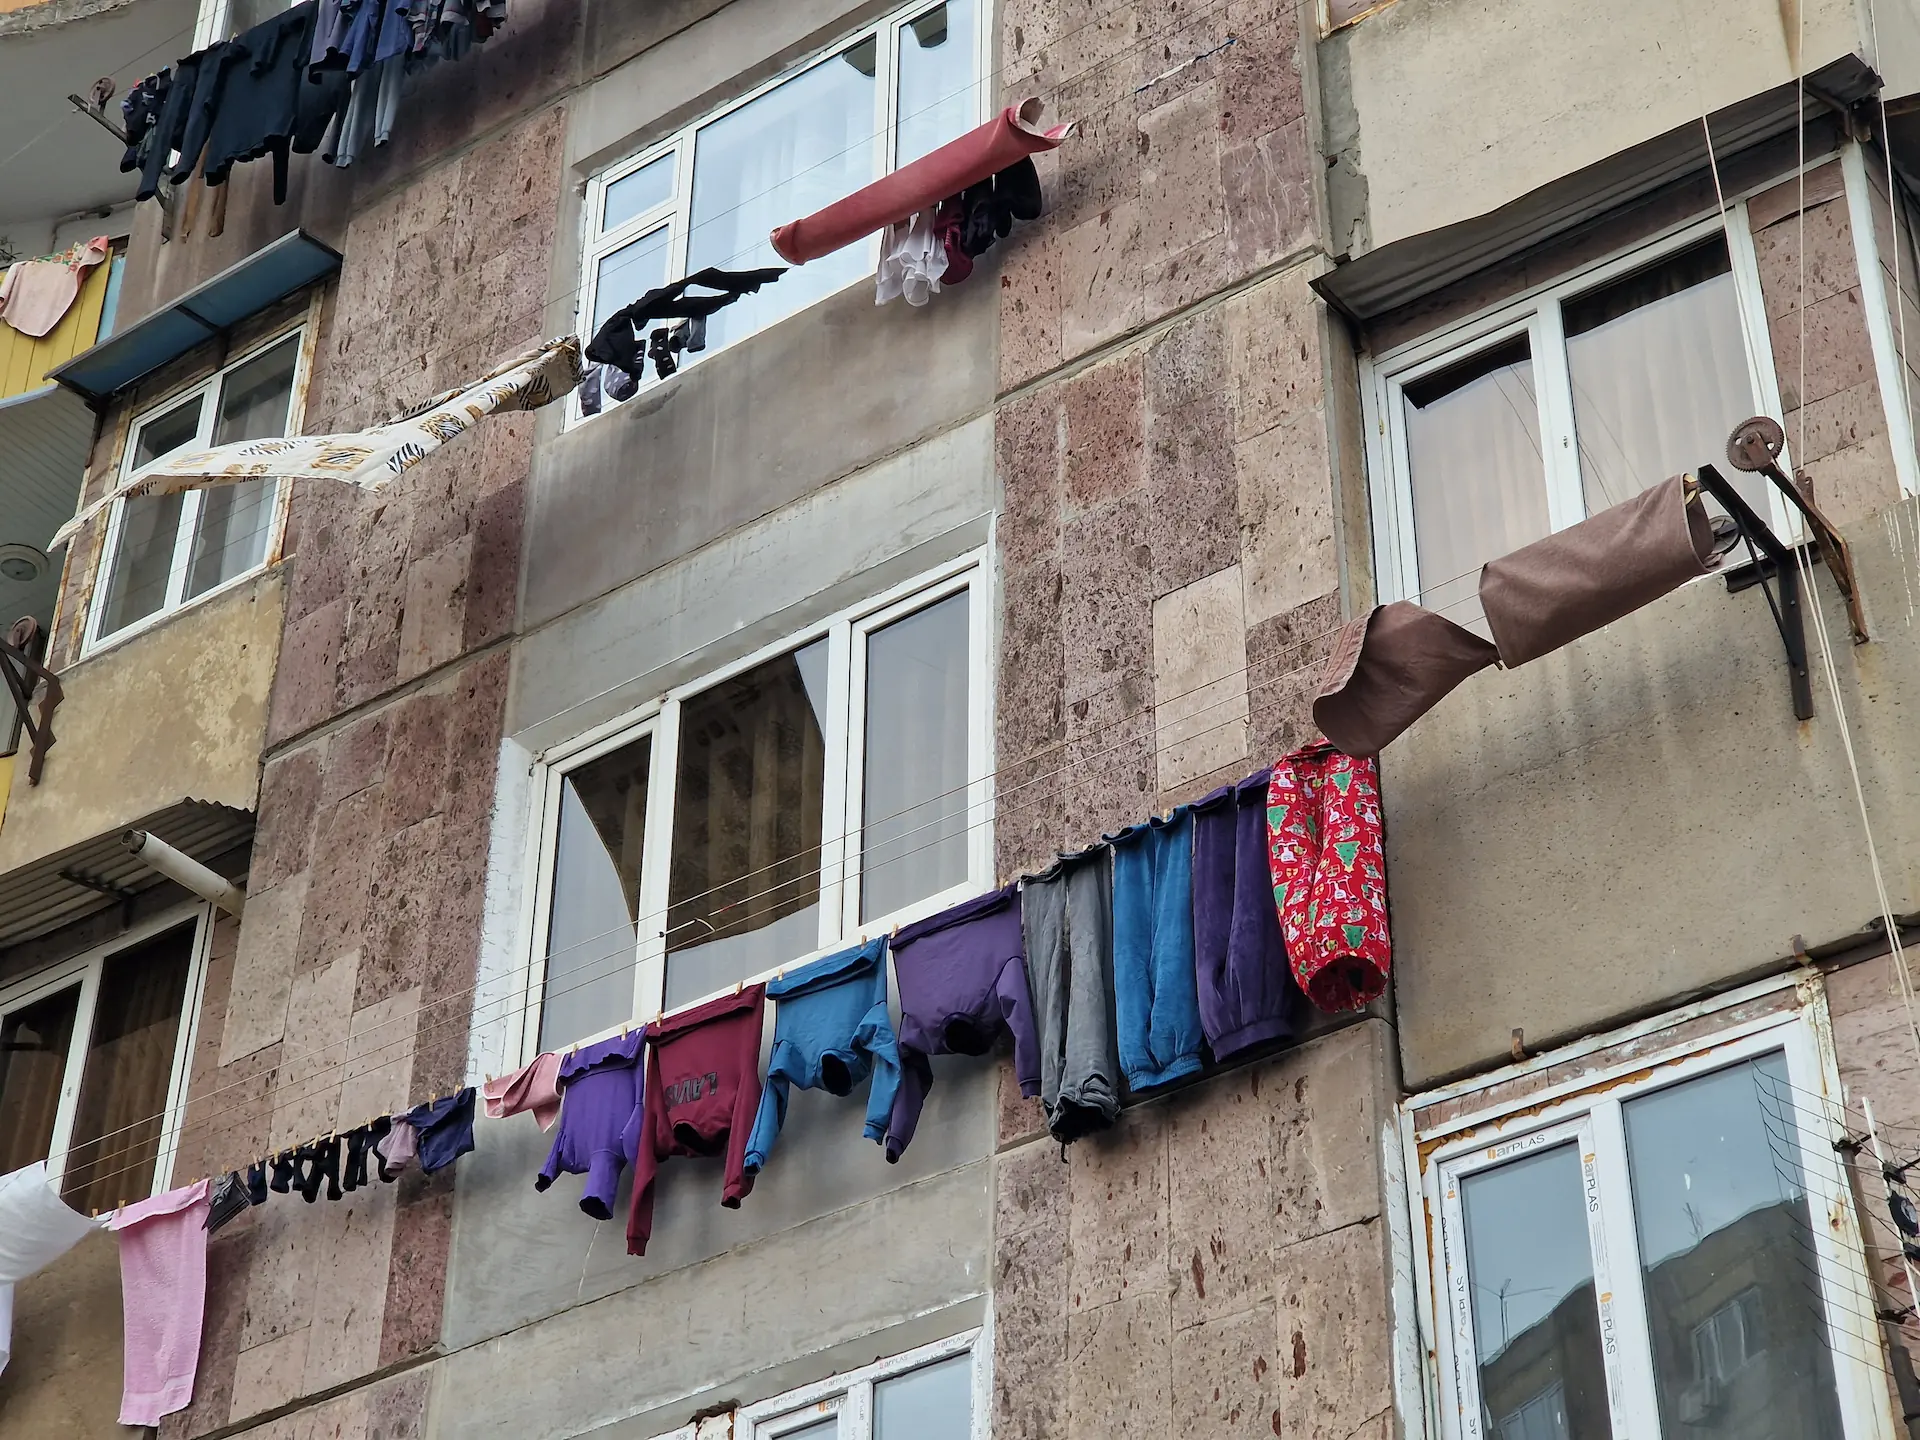 Des habits colorés sèchent sur des fils accrochés devant les fenêtres.